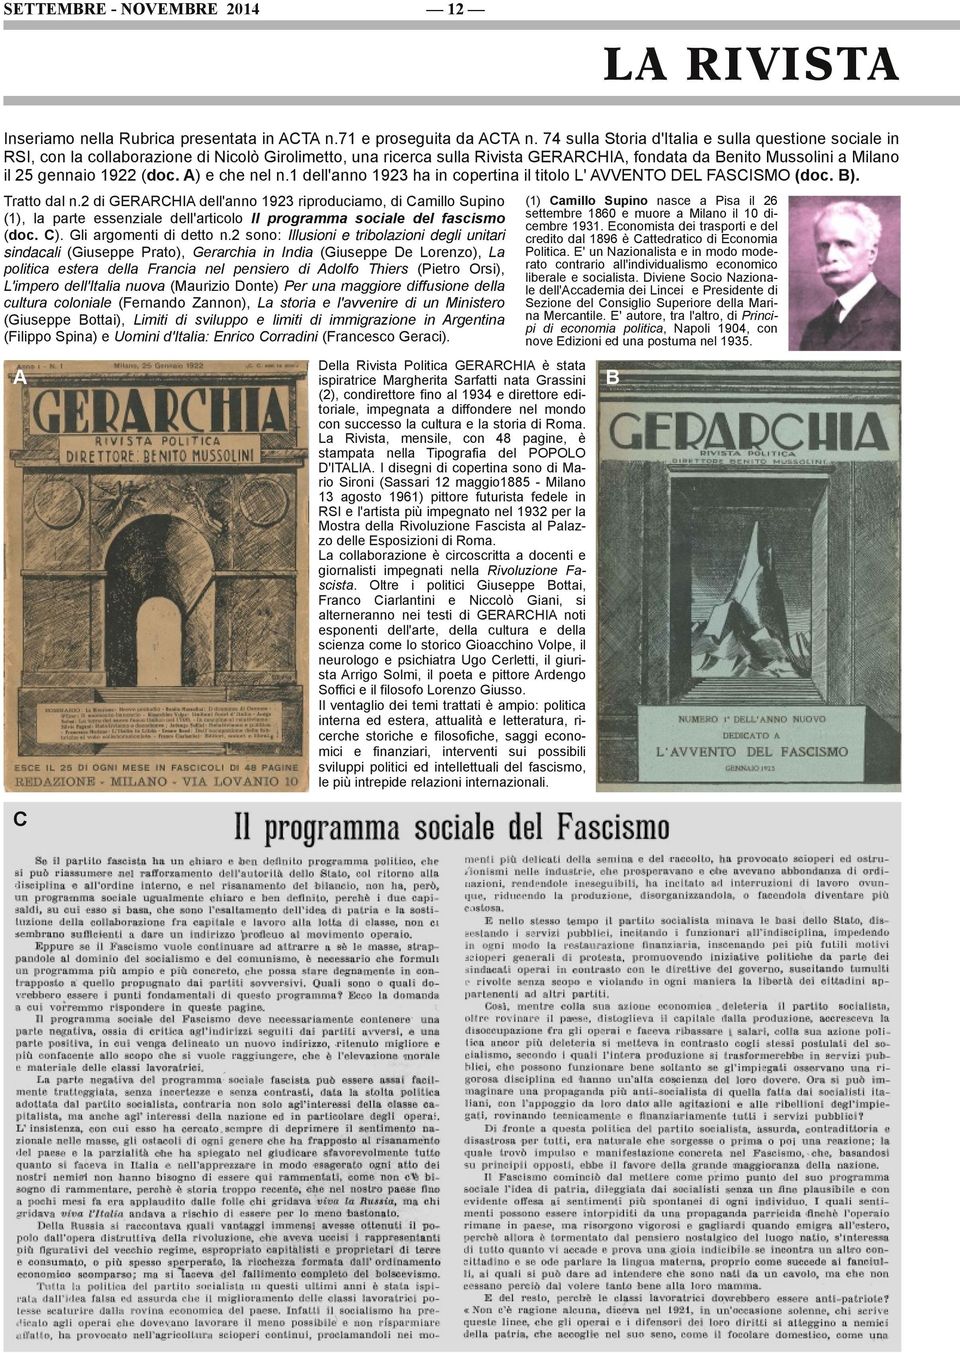 (doc. A) e che nel n.1 dell'anno 1923 ha in copertina il titolo L' AVVENTO DEL FASCISMO (doc. B). Tratto dal n.